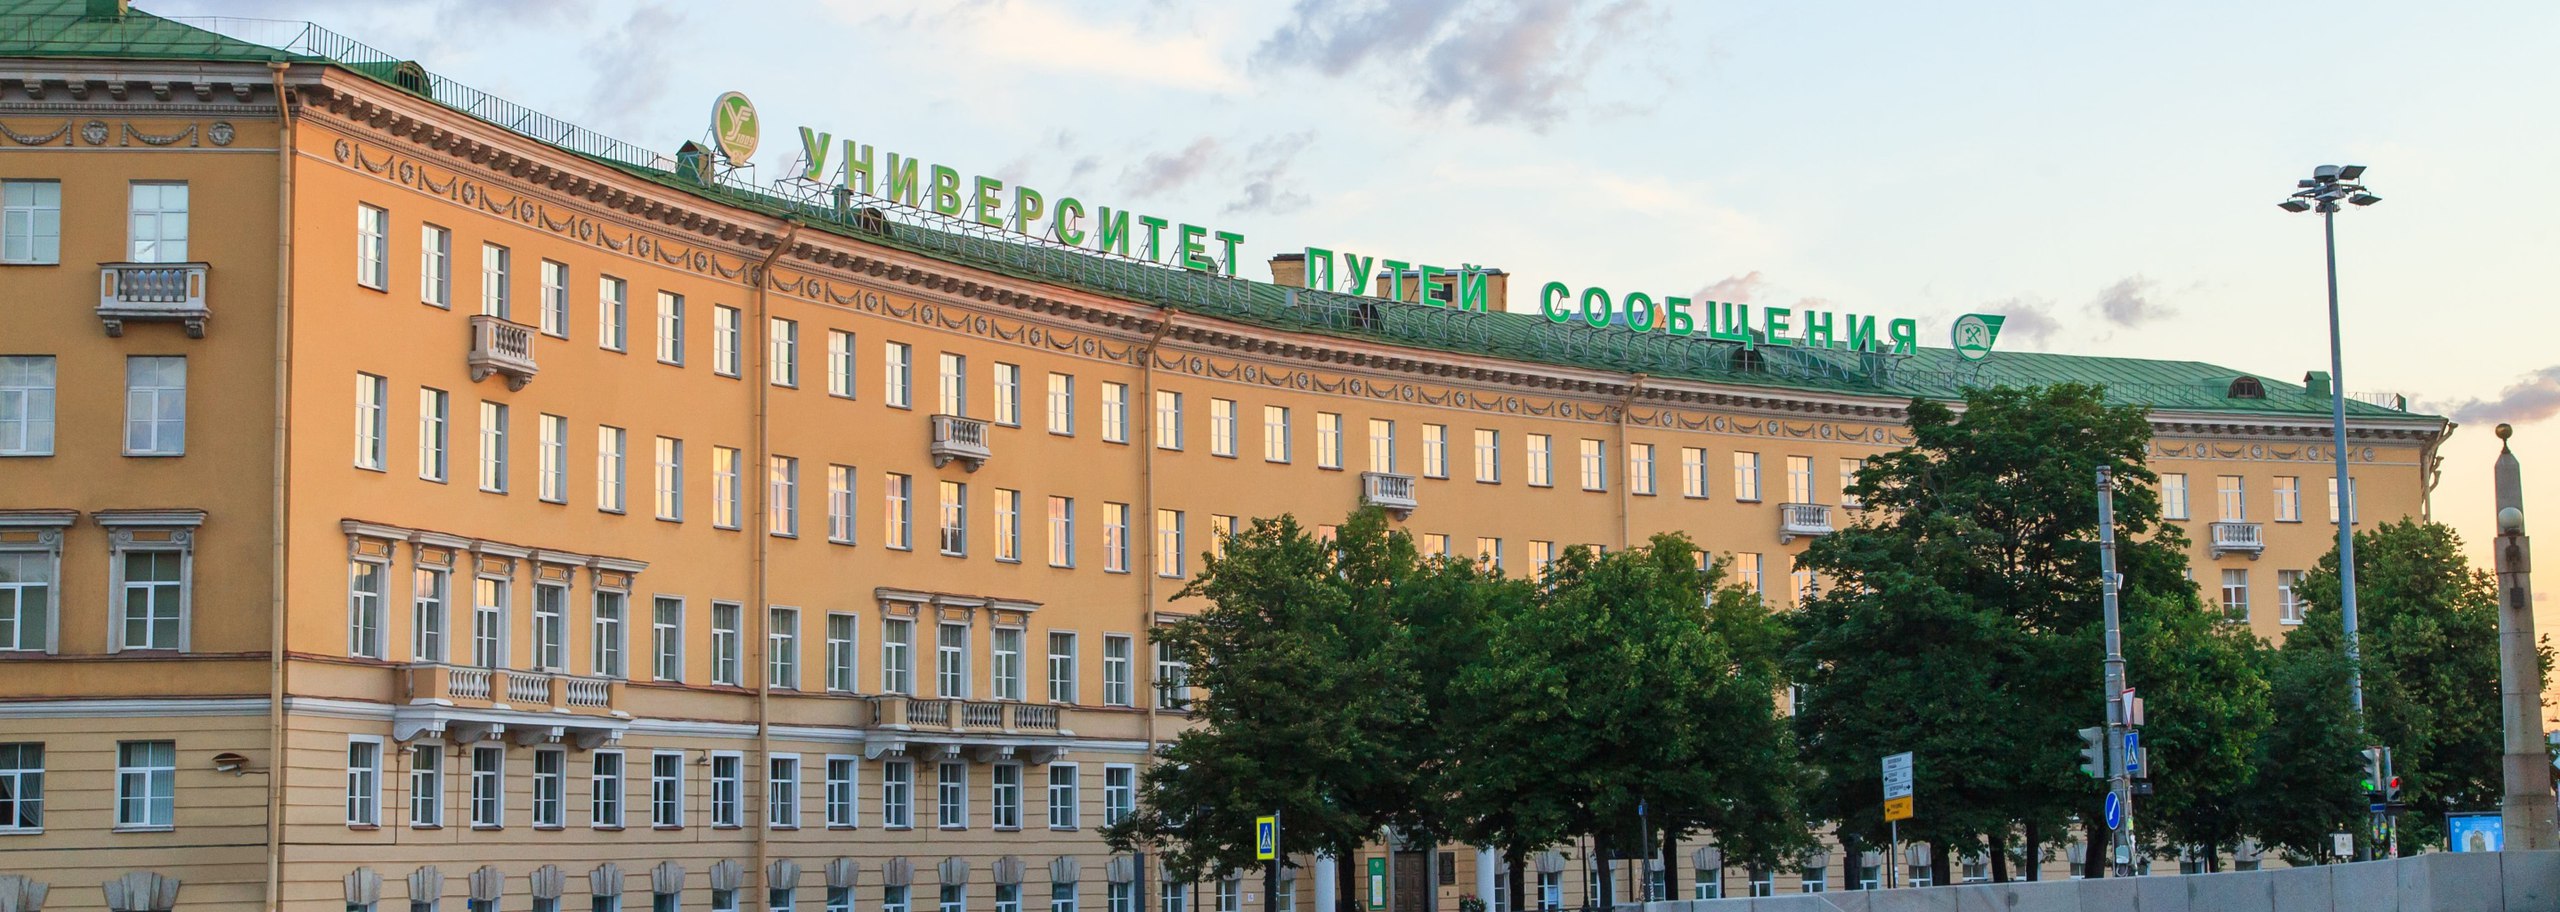 俄罗斯圣彼得堡国立交通大学有在校生7000多人,教职员工约1500人